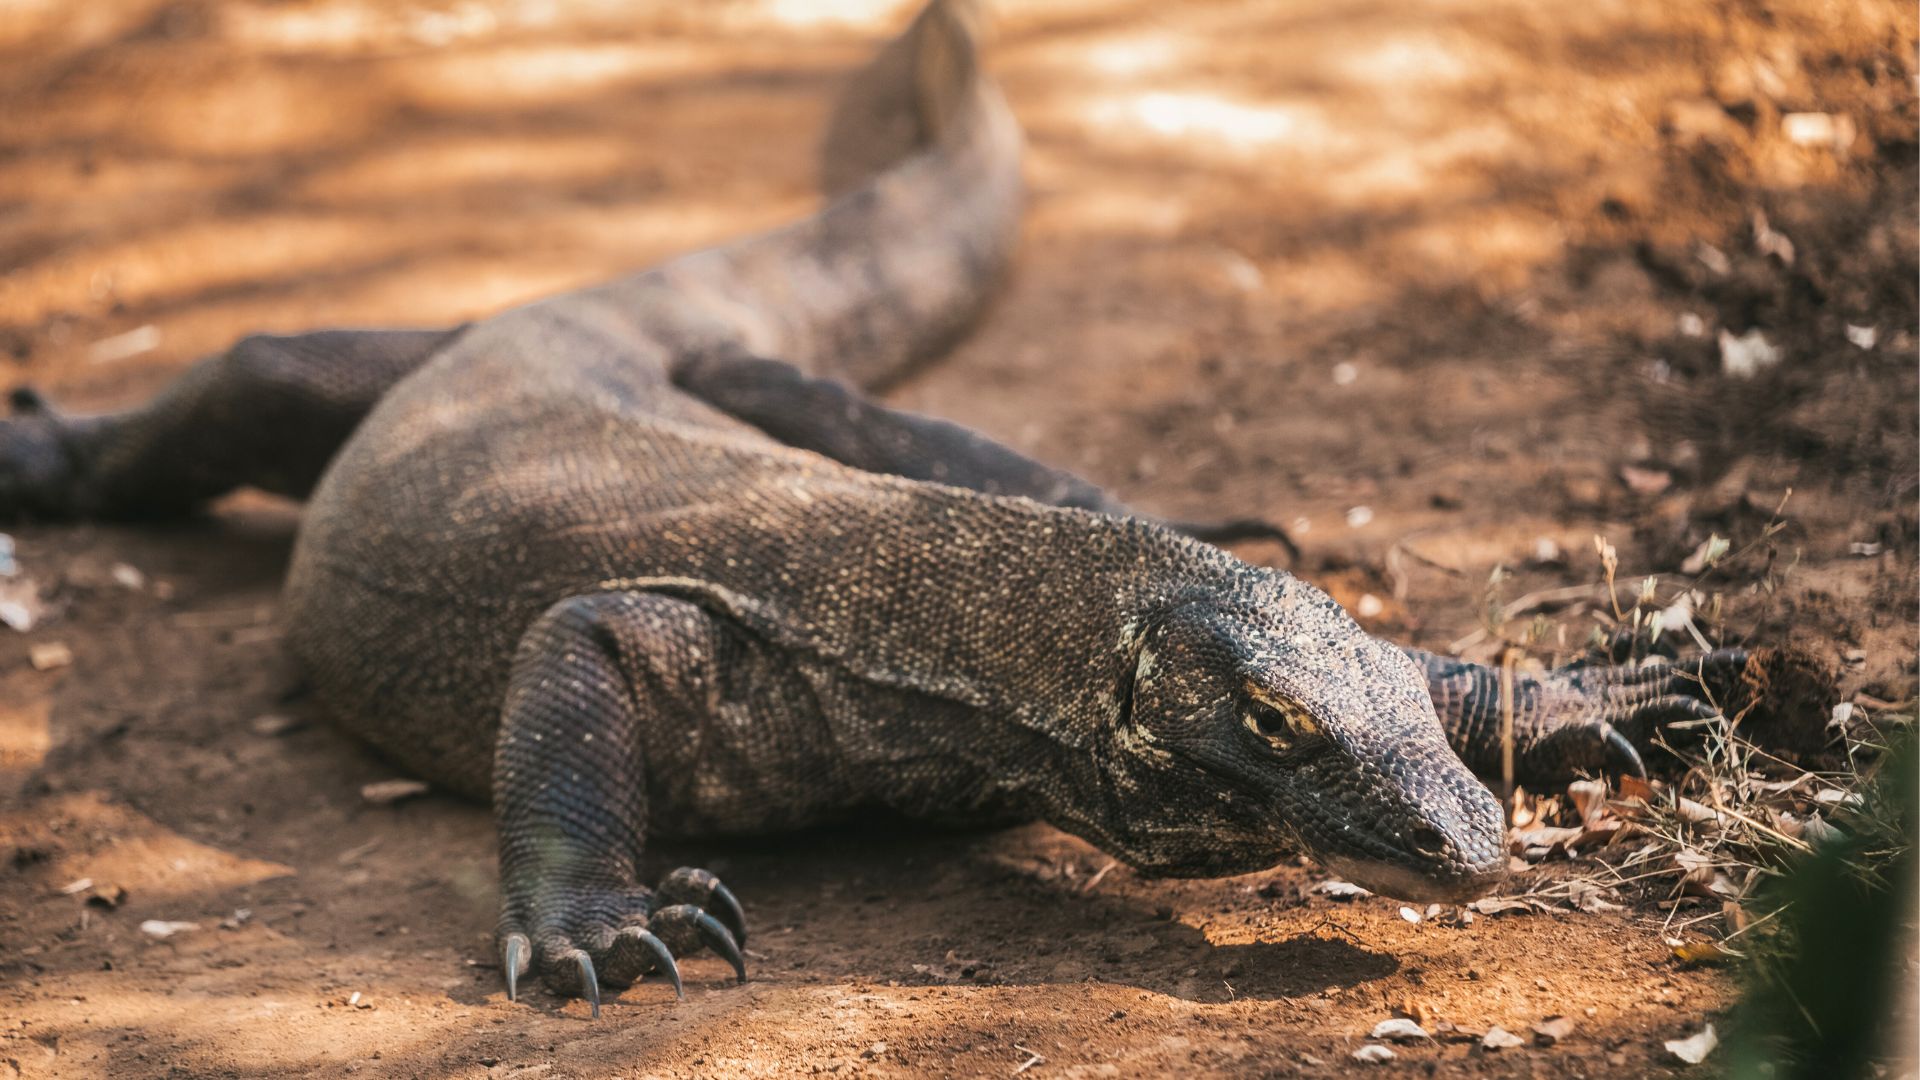 Encounter Komodo Dragons at their natural habitat